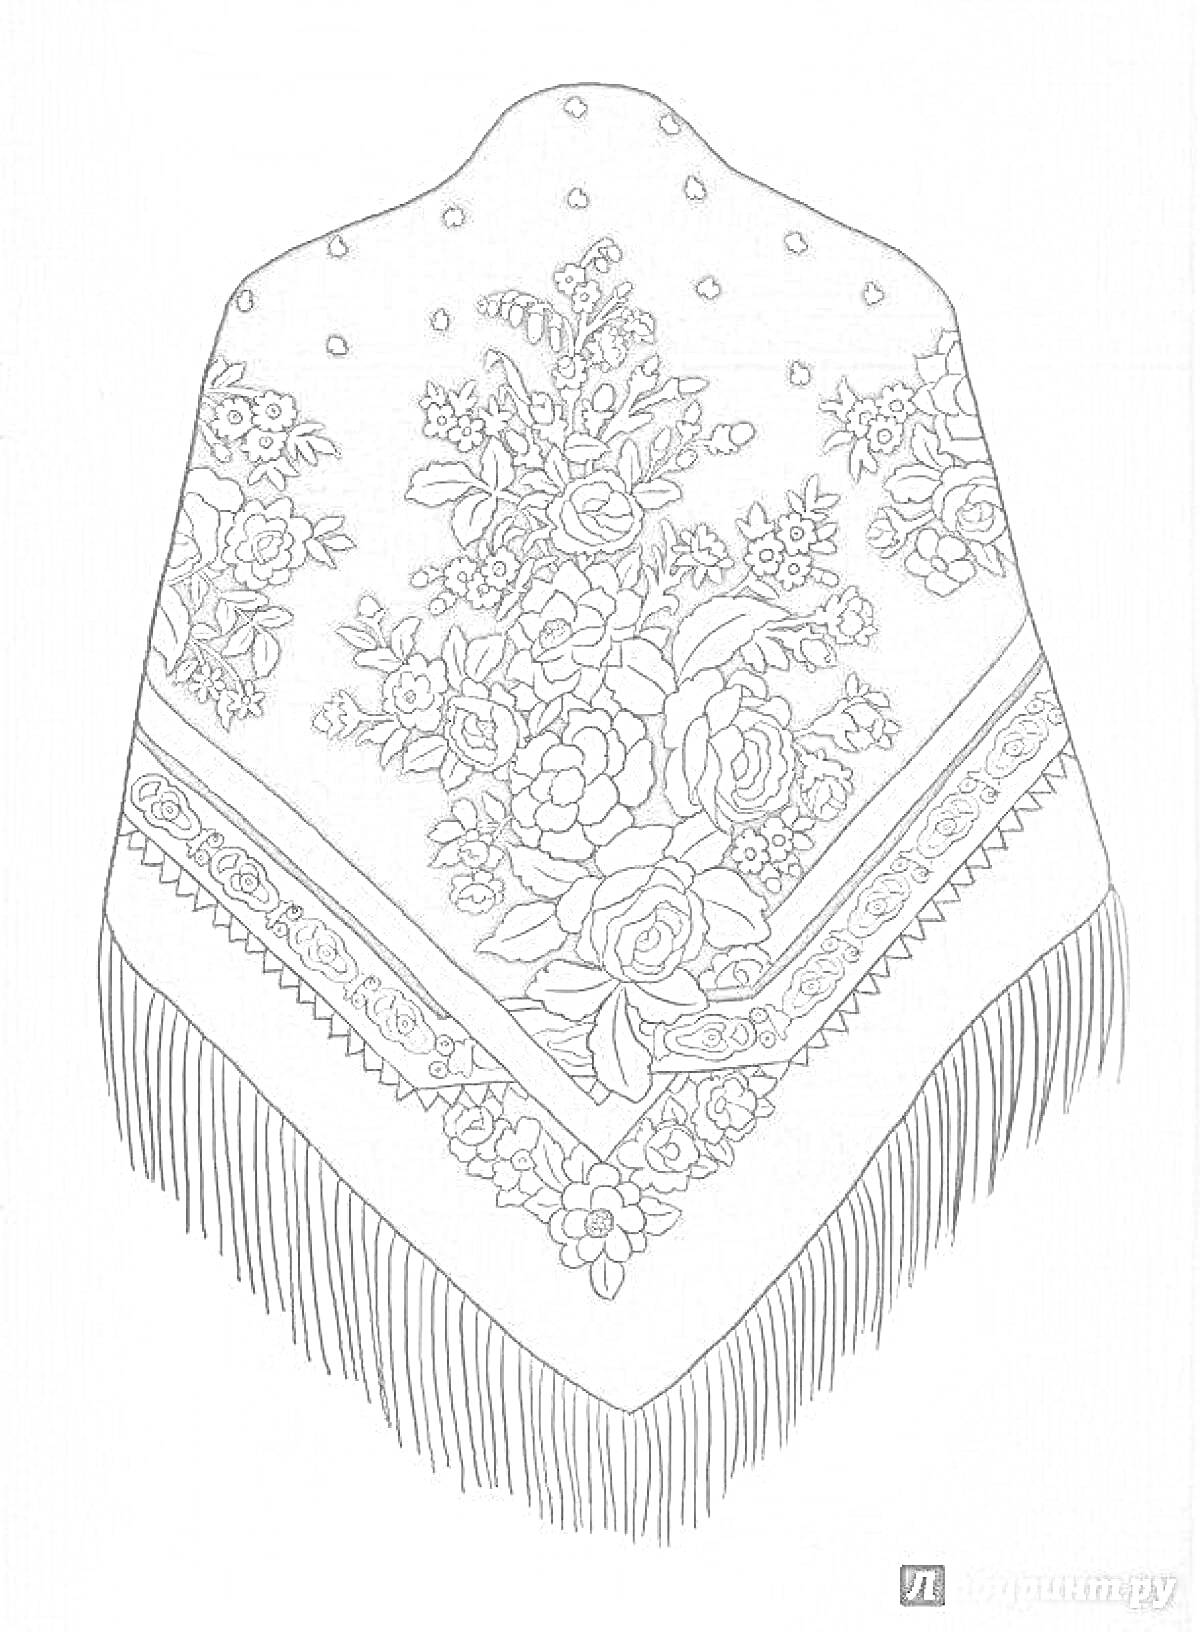 Павлопосадский платок с цветочным узором и бахромой. На платке изображены красочные цветочные композиции и узоры на темном фоне, украшенные бахромой по краю.